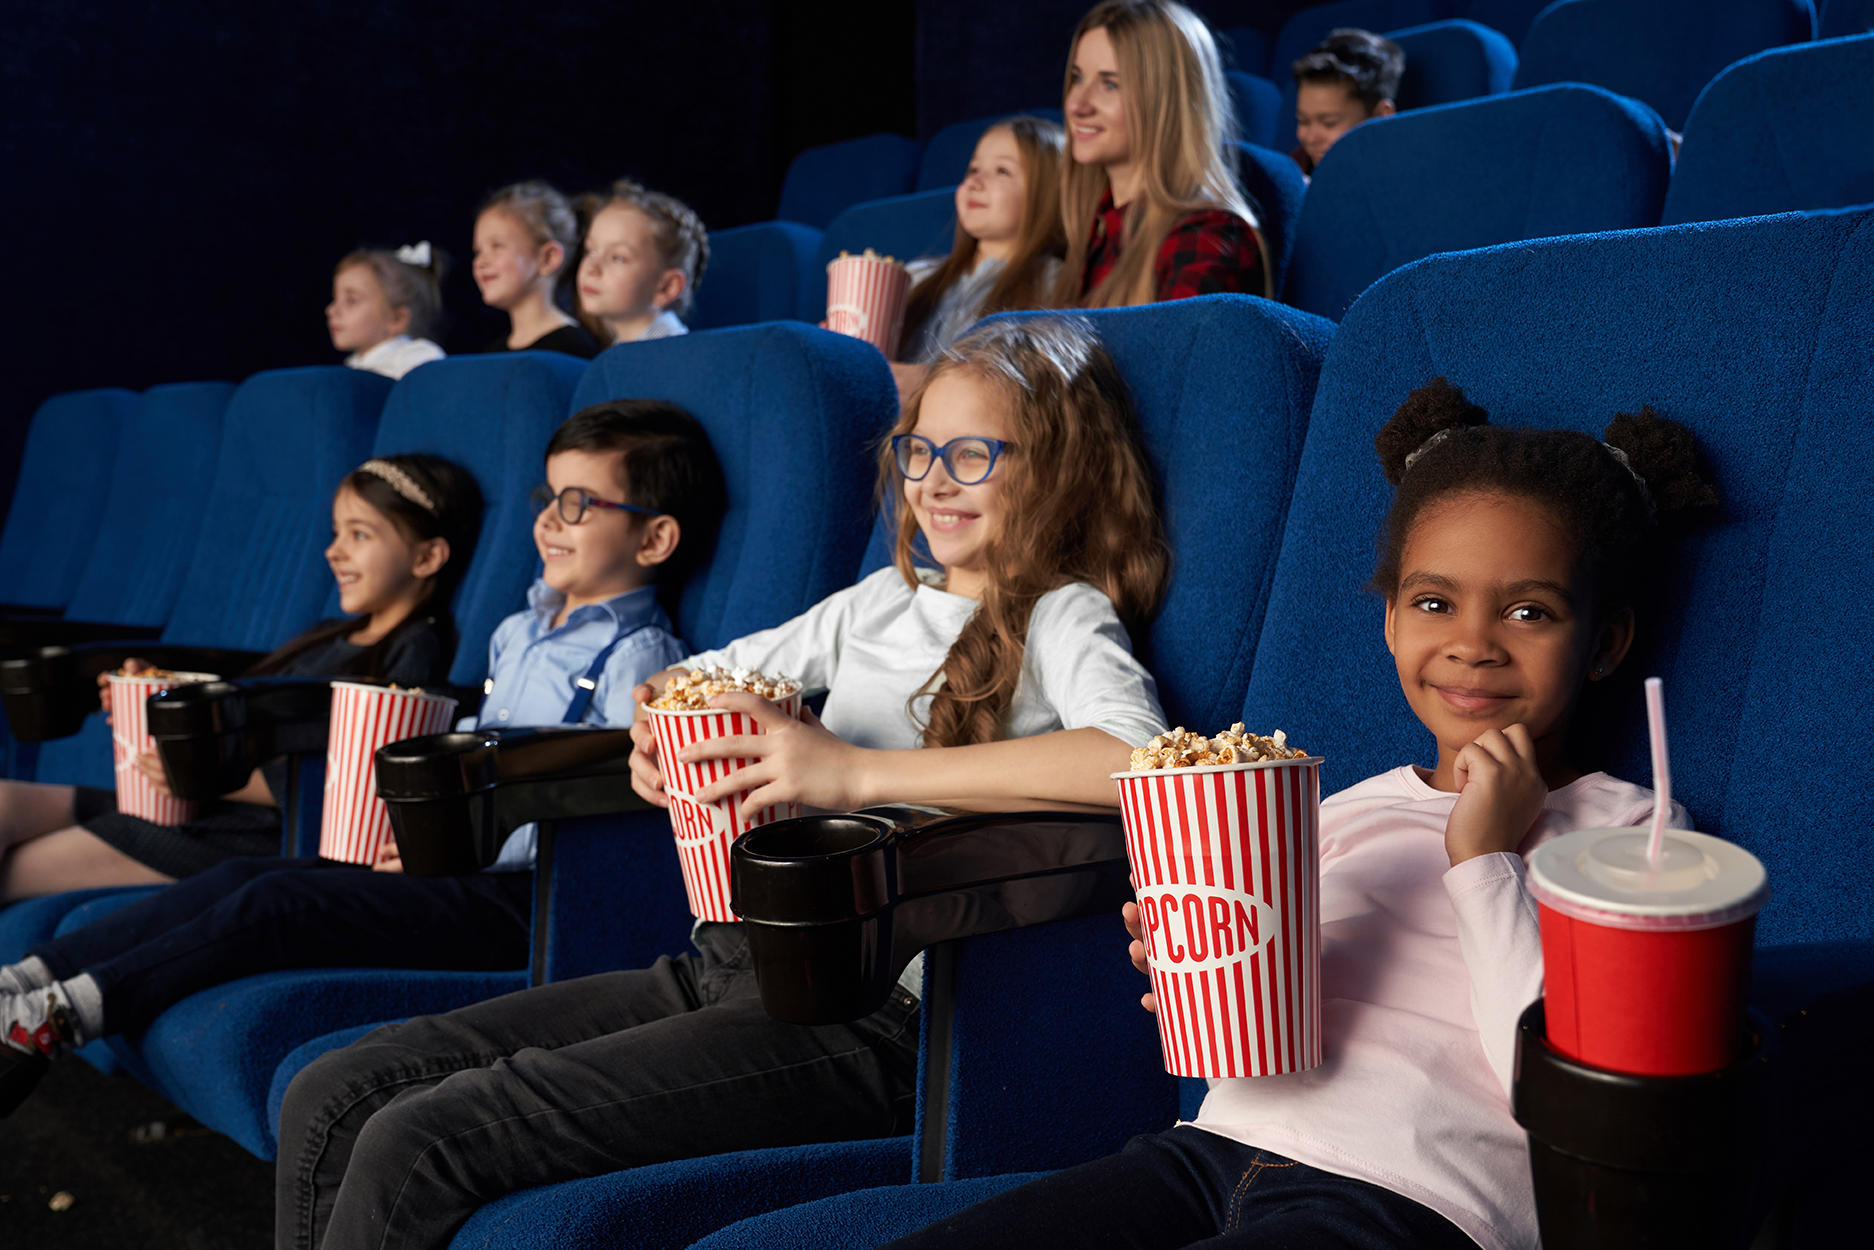 Children enjoying film premiere in movie theatre.